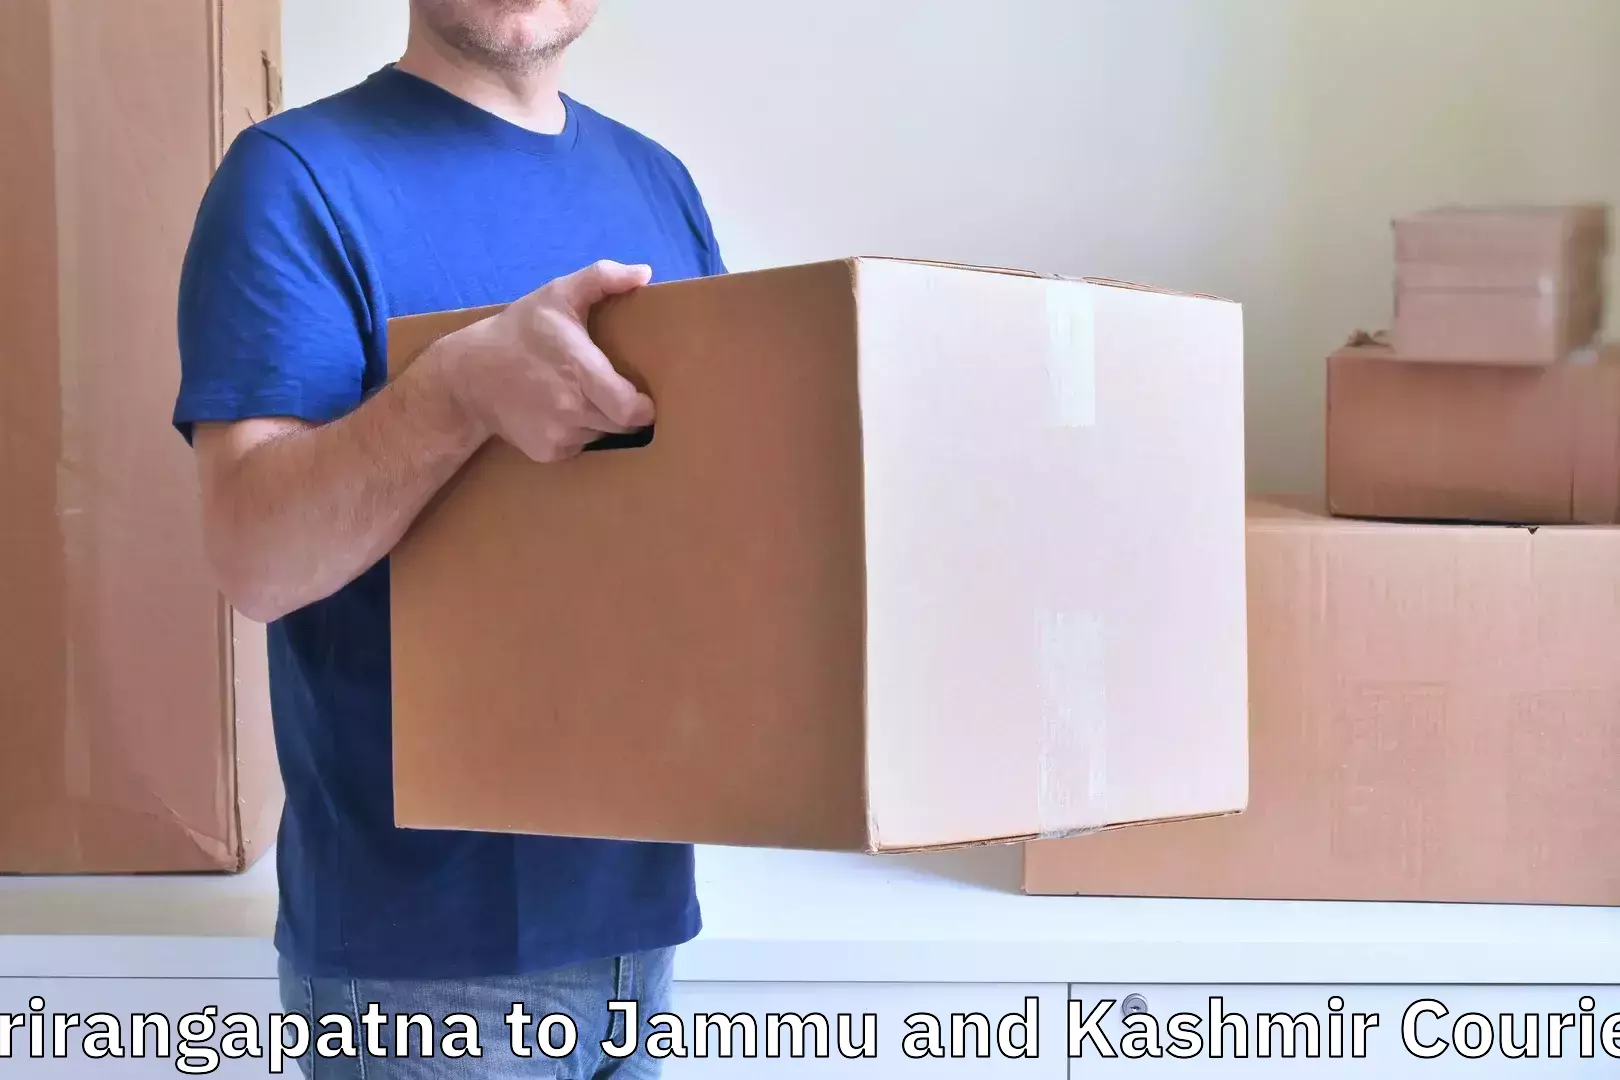 Personal effects shipping Srirangapatna to Jammu and Kashmir